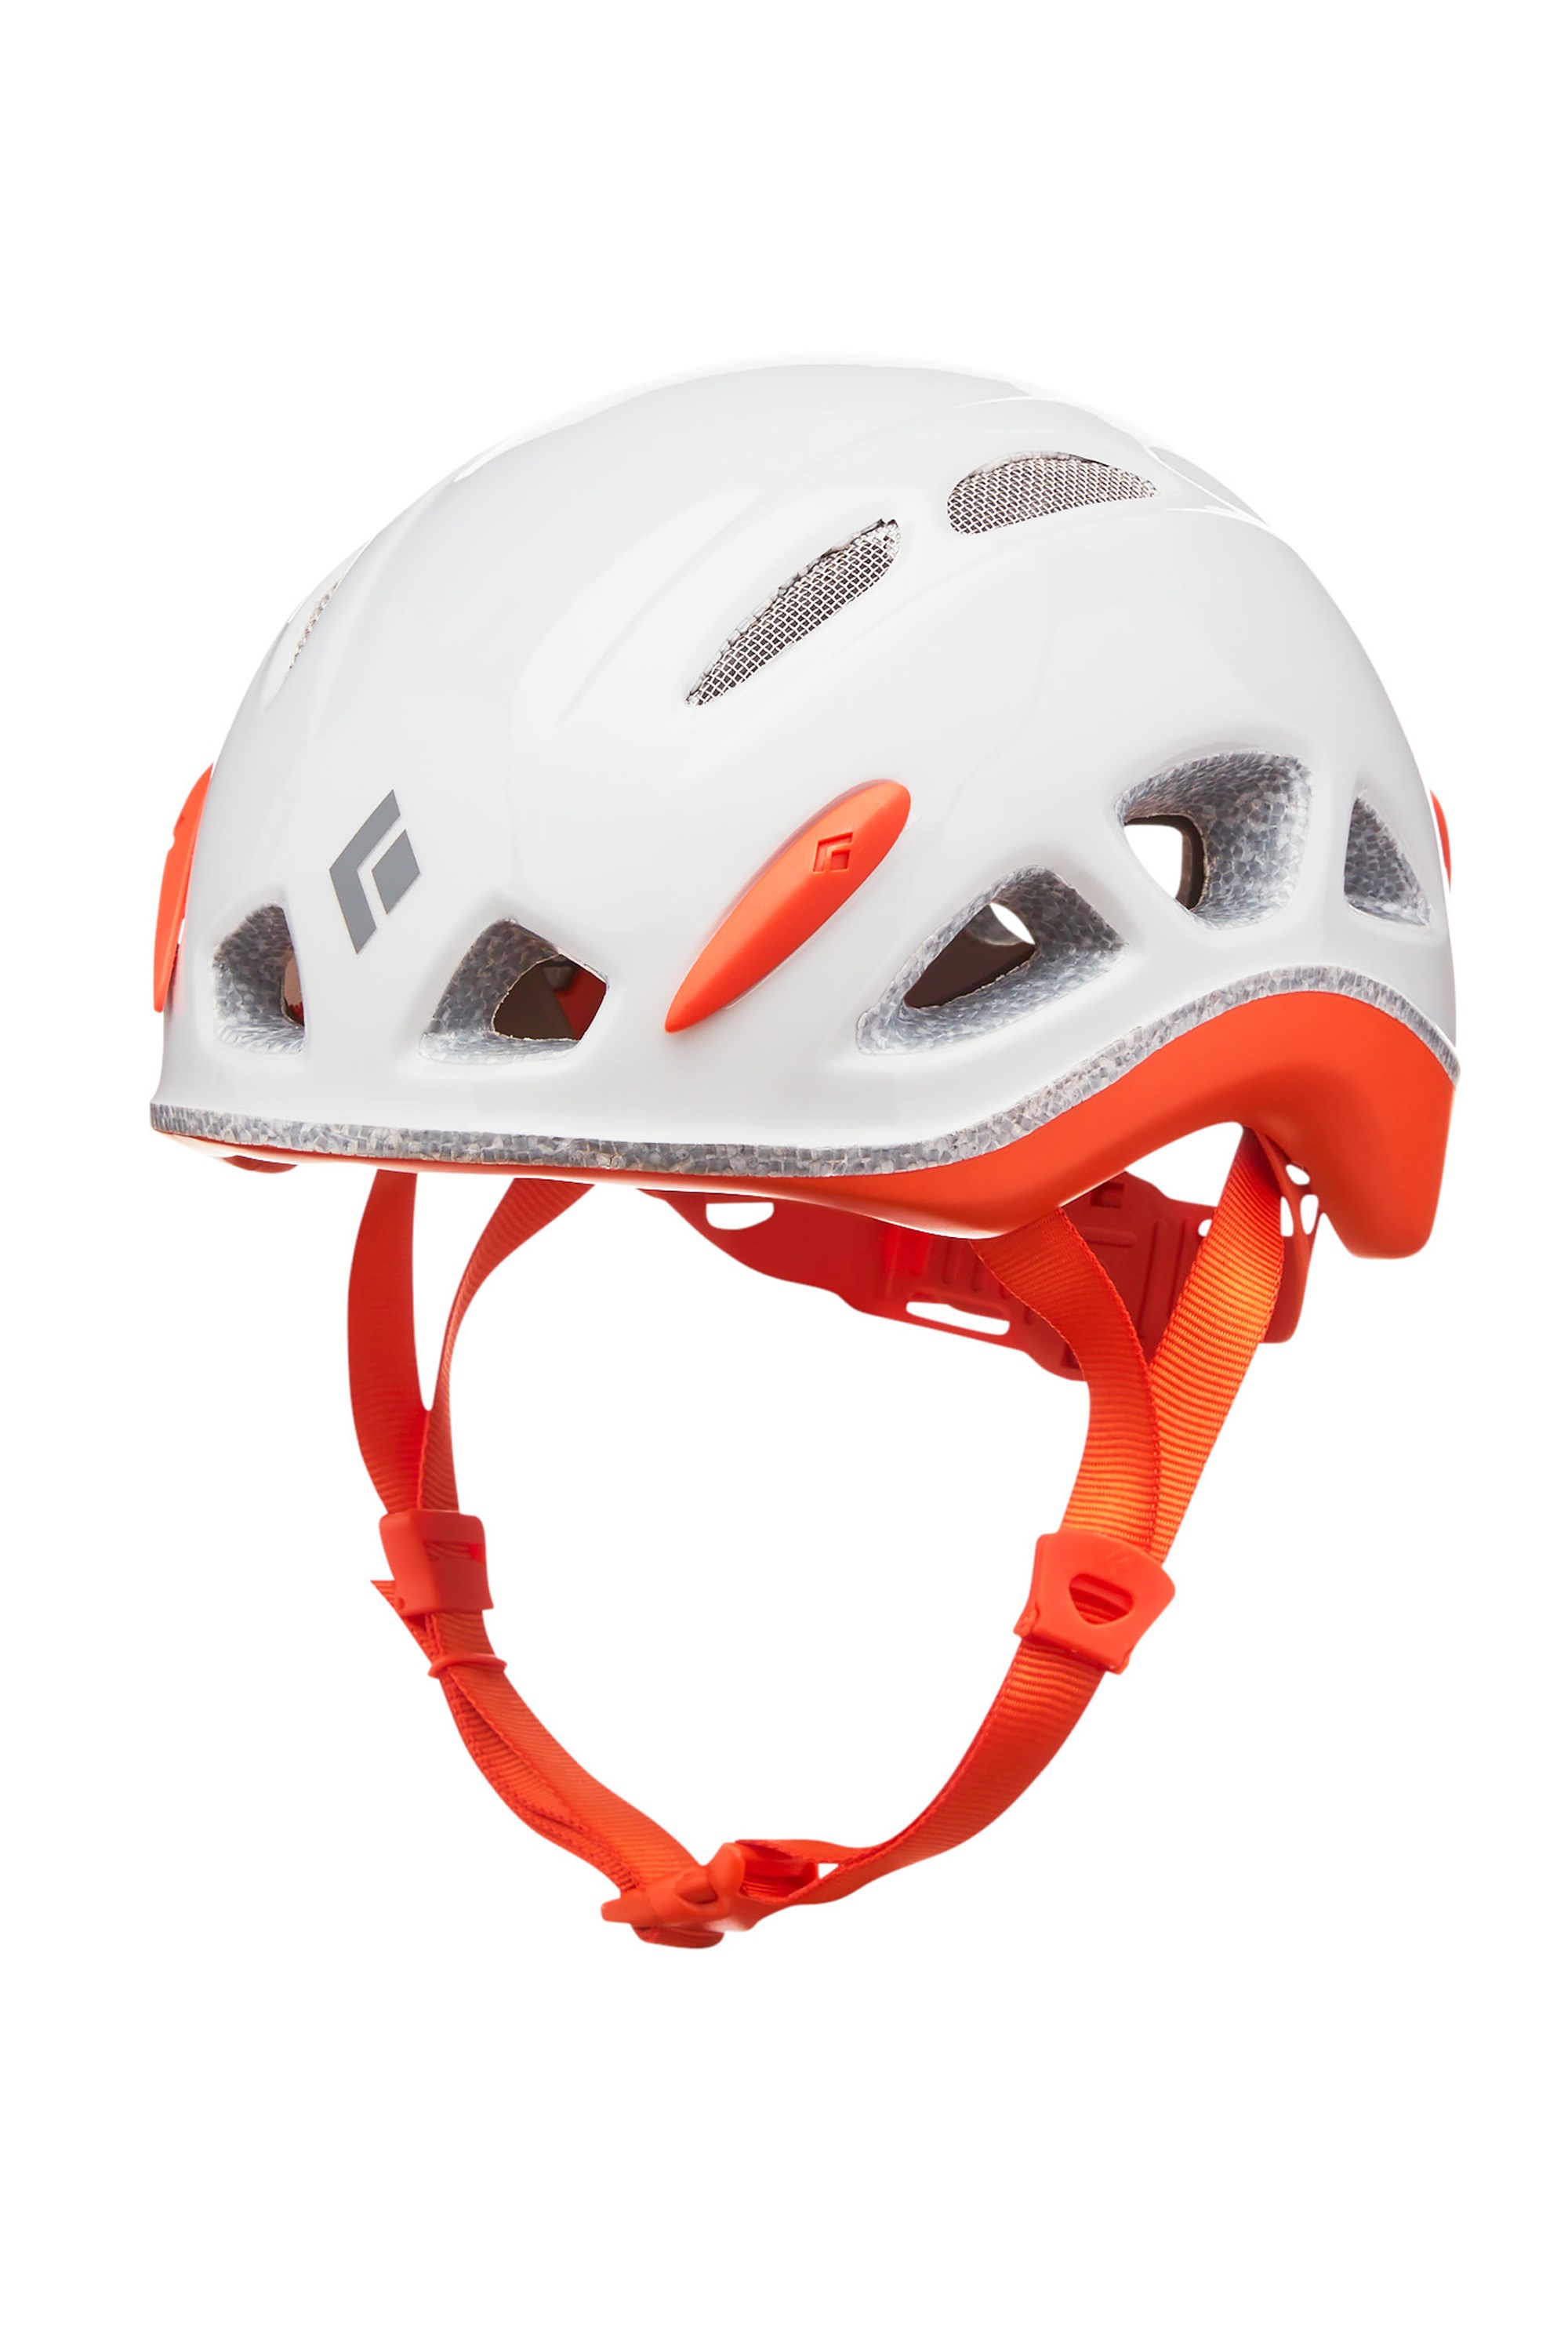 Tracer Kids Climbing Helmet - White